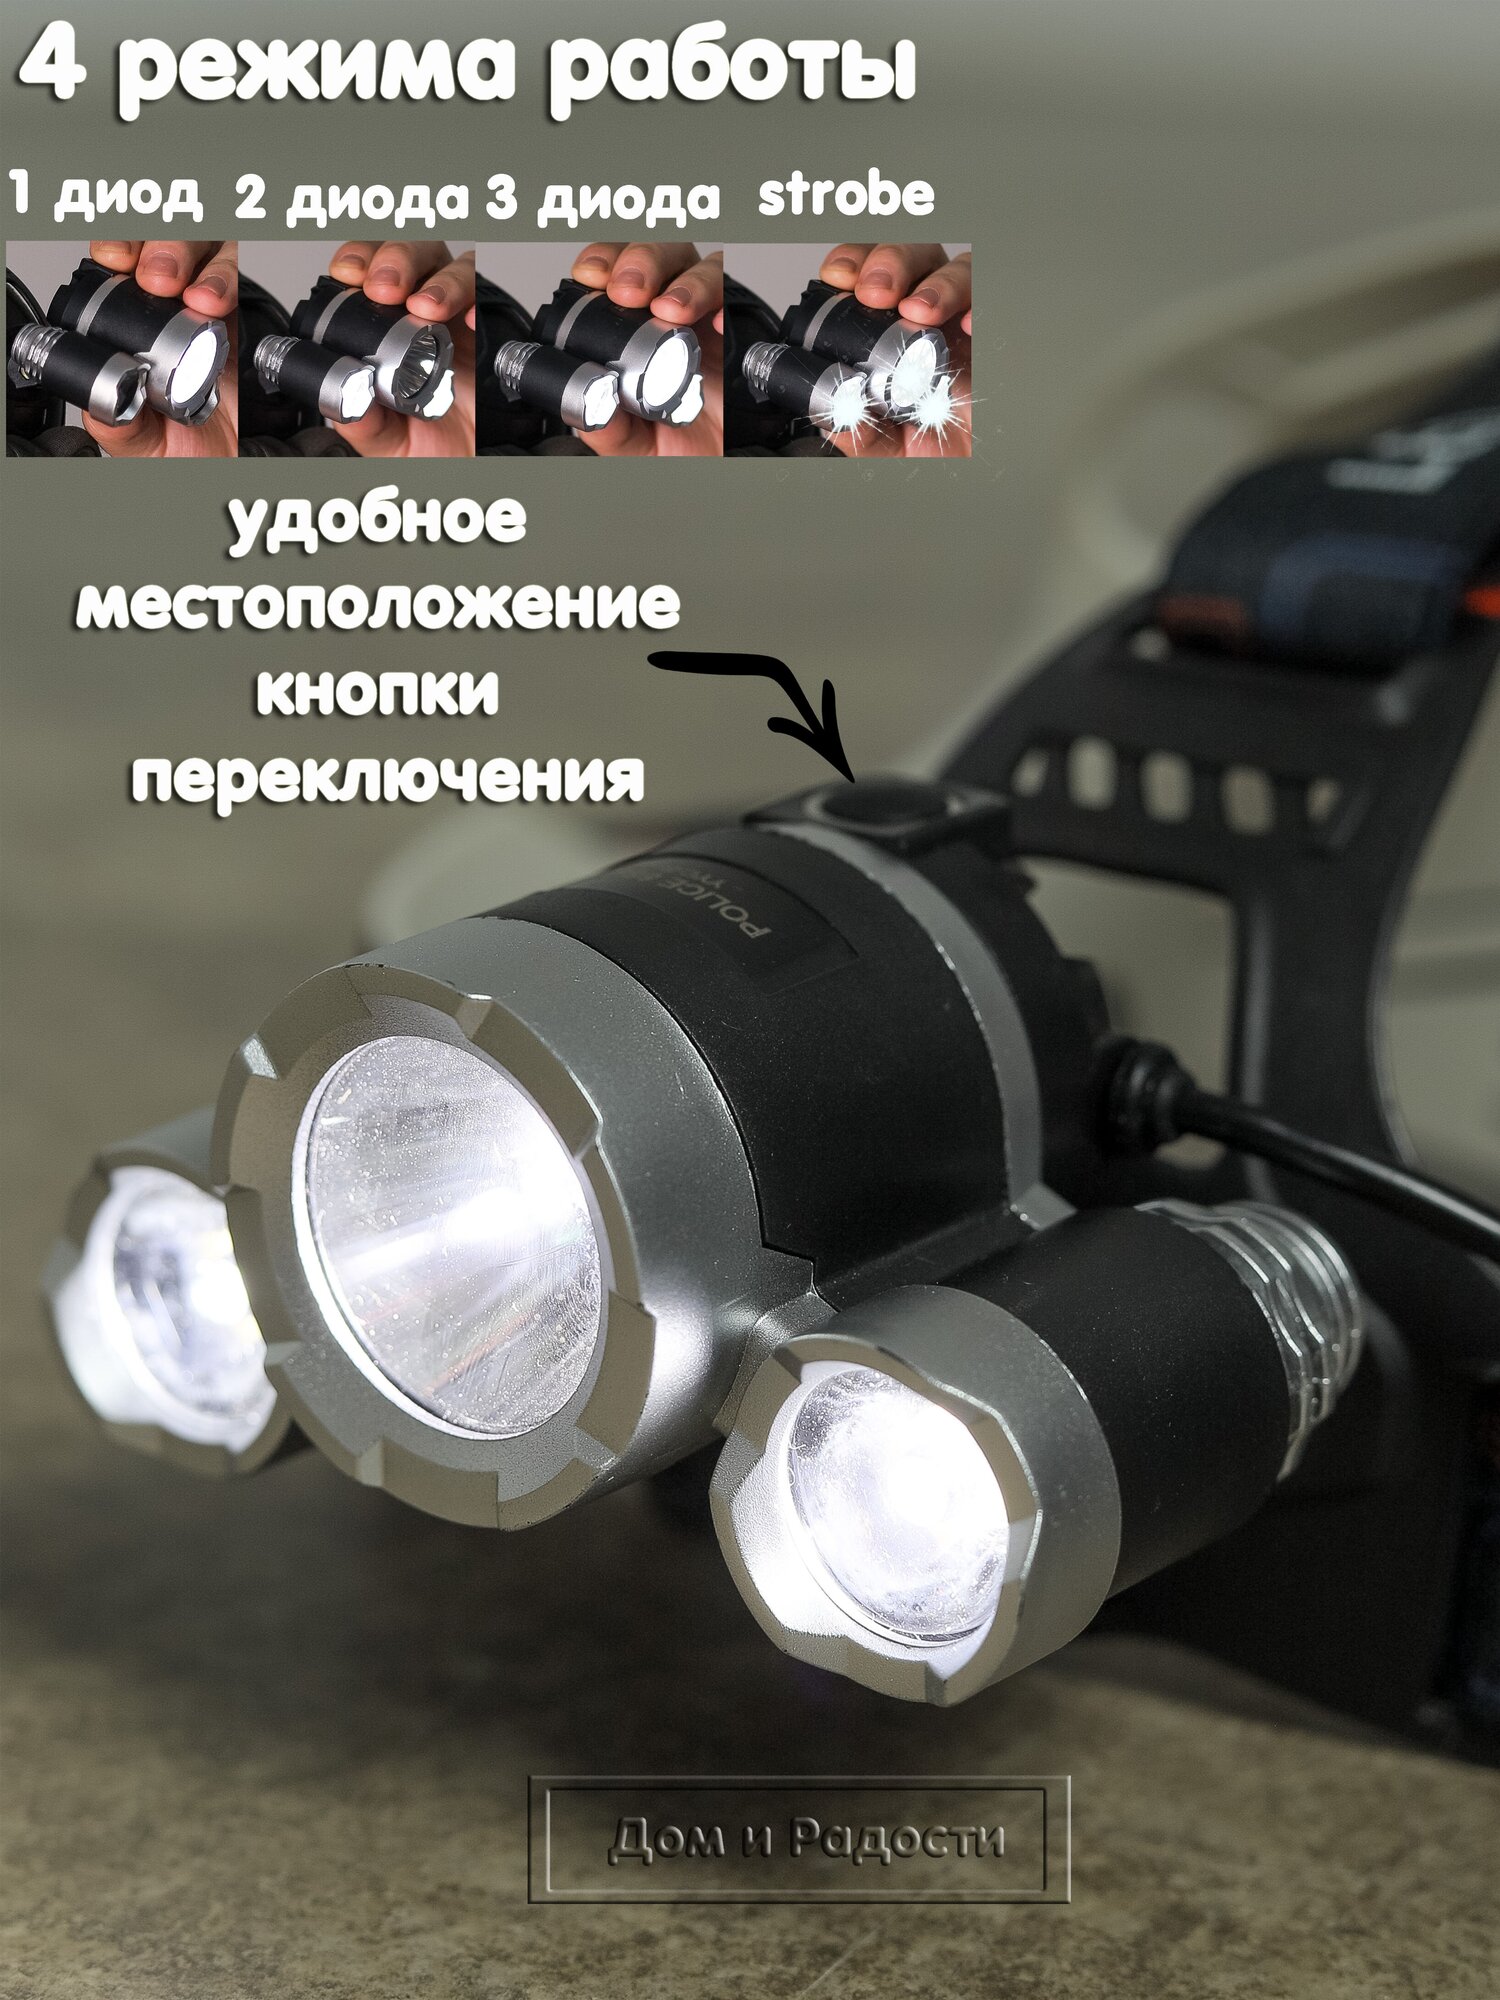 Налобный фонарь сверхяркий мощный светодиодный спортивный бытовой аккумуляторный с 4 режимами работы и 4 аккумуляторами 18650 для охоты и рыбалки